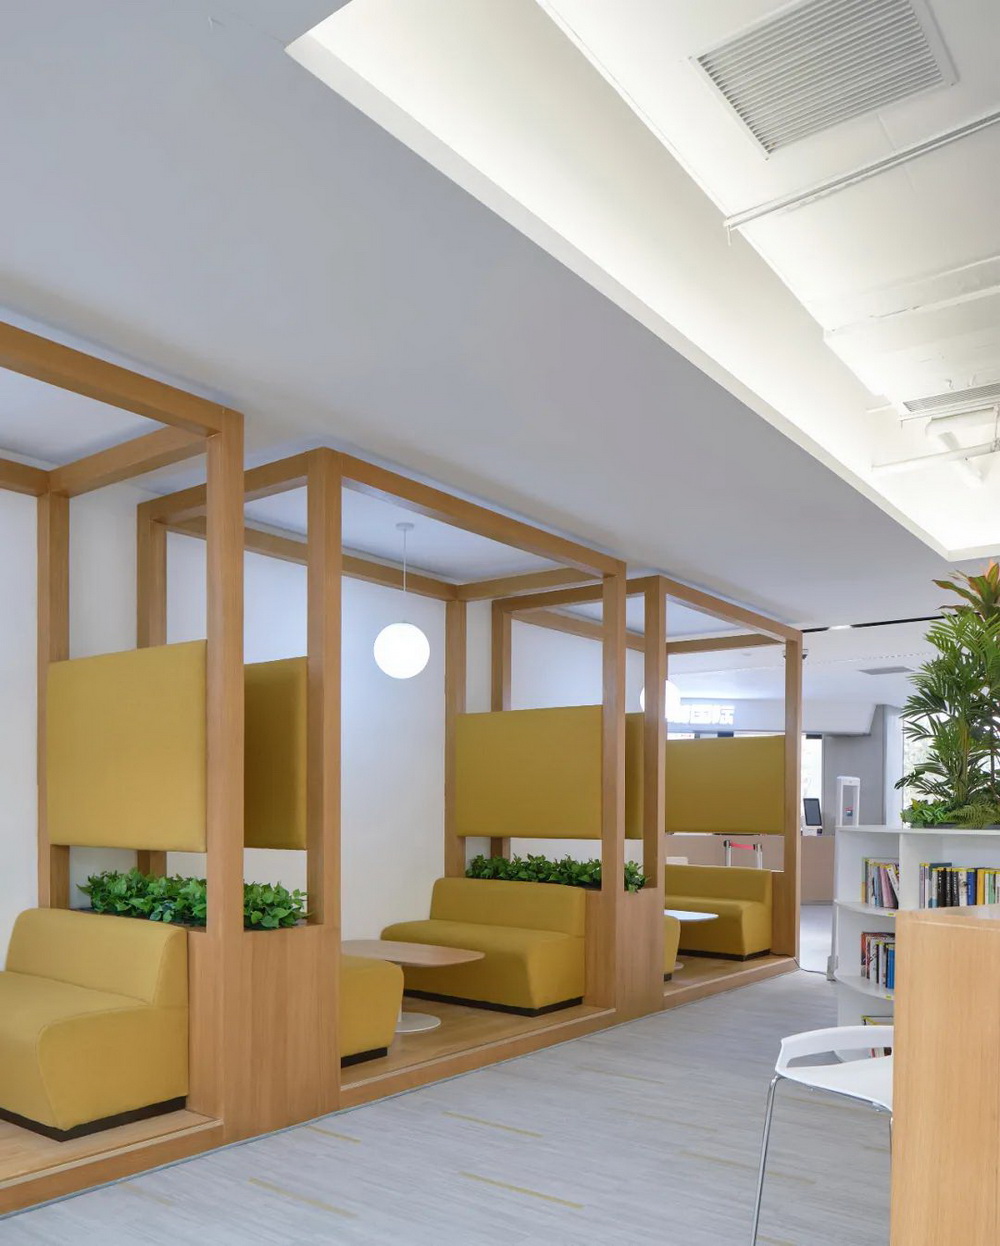 焦作 大咖国际食品产业园生活区 室内设计  / 艾迪尔IDEAL